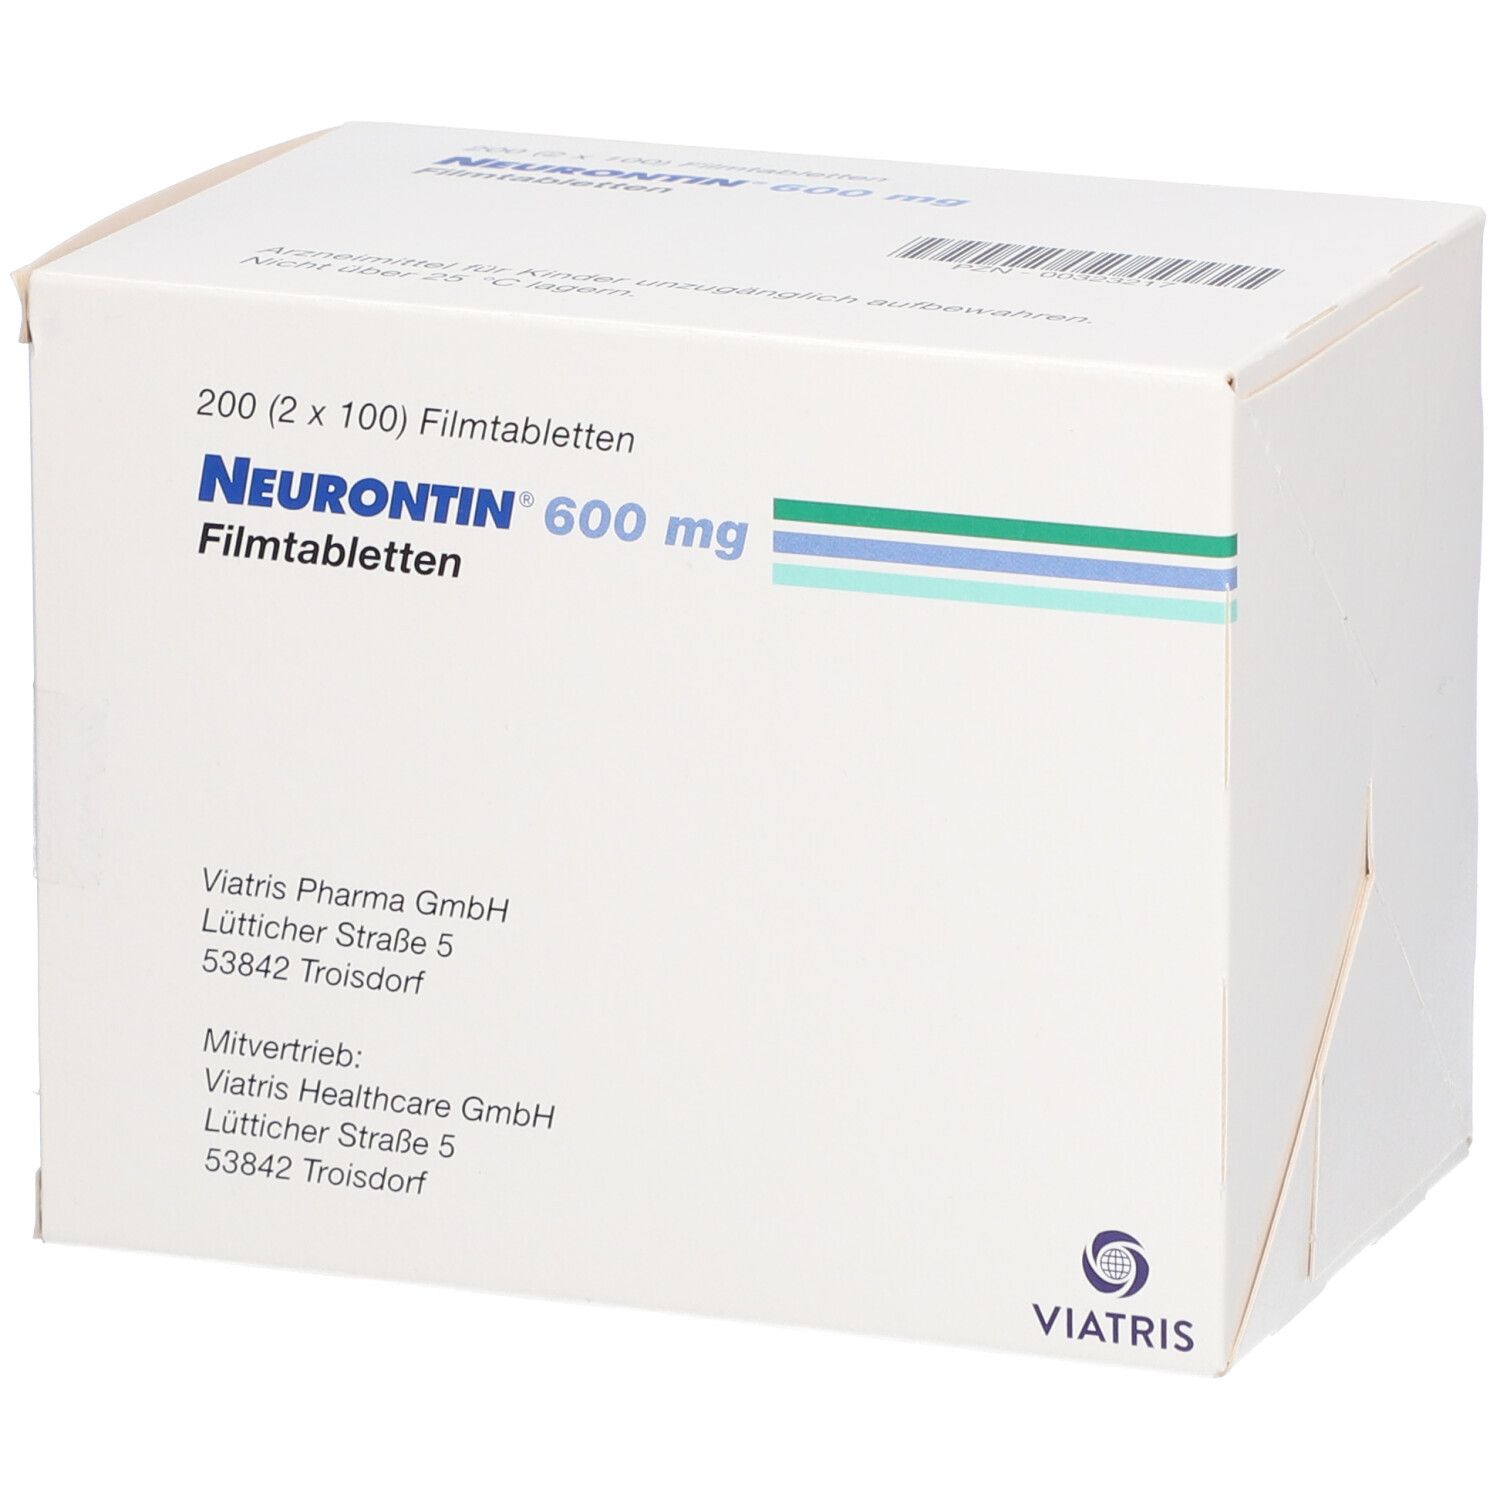 Neurontin® 600 mg